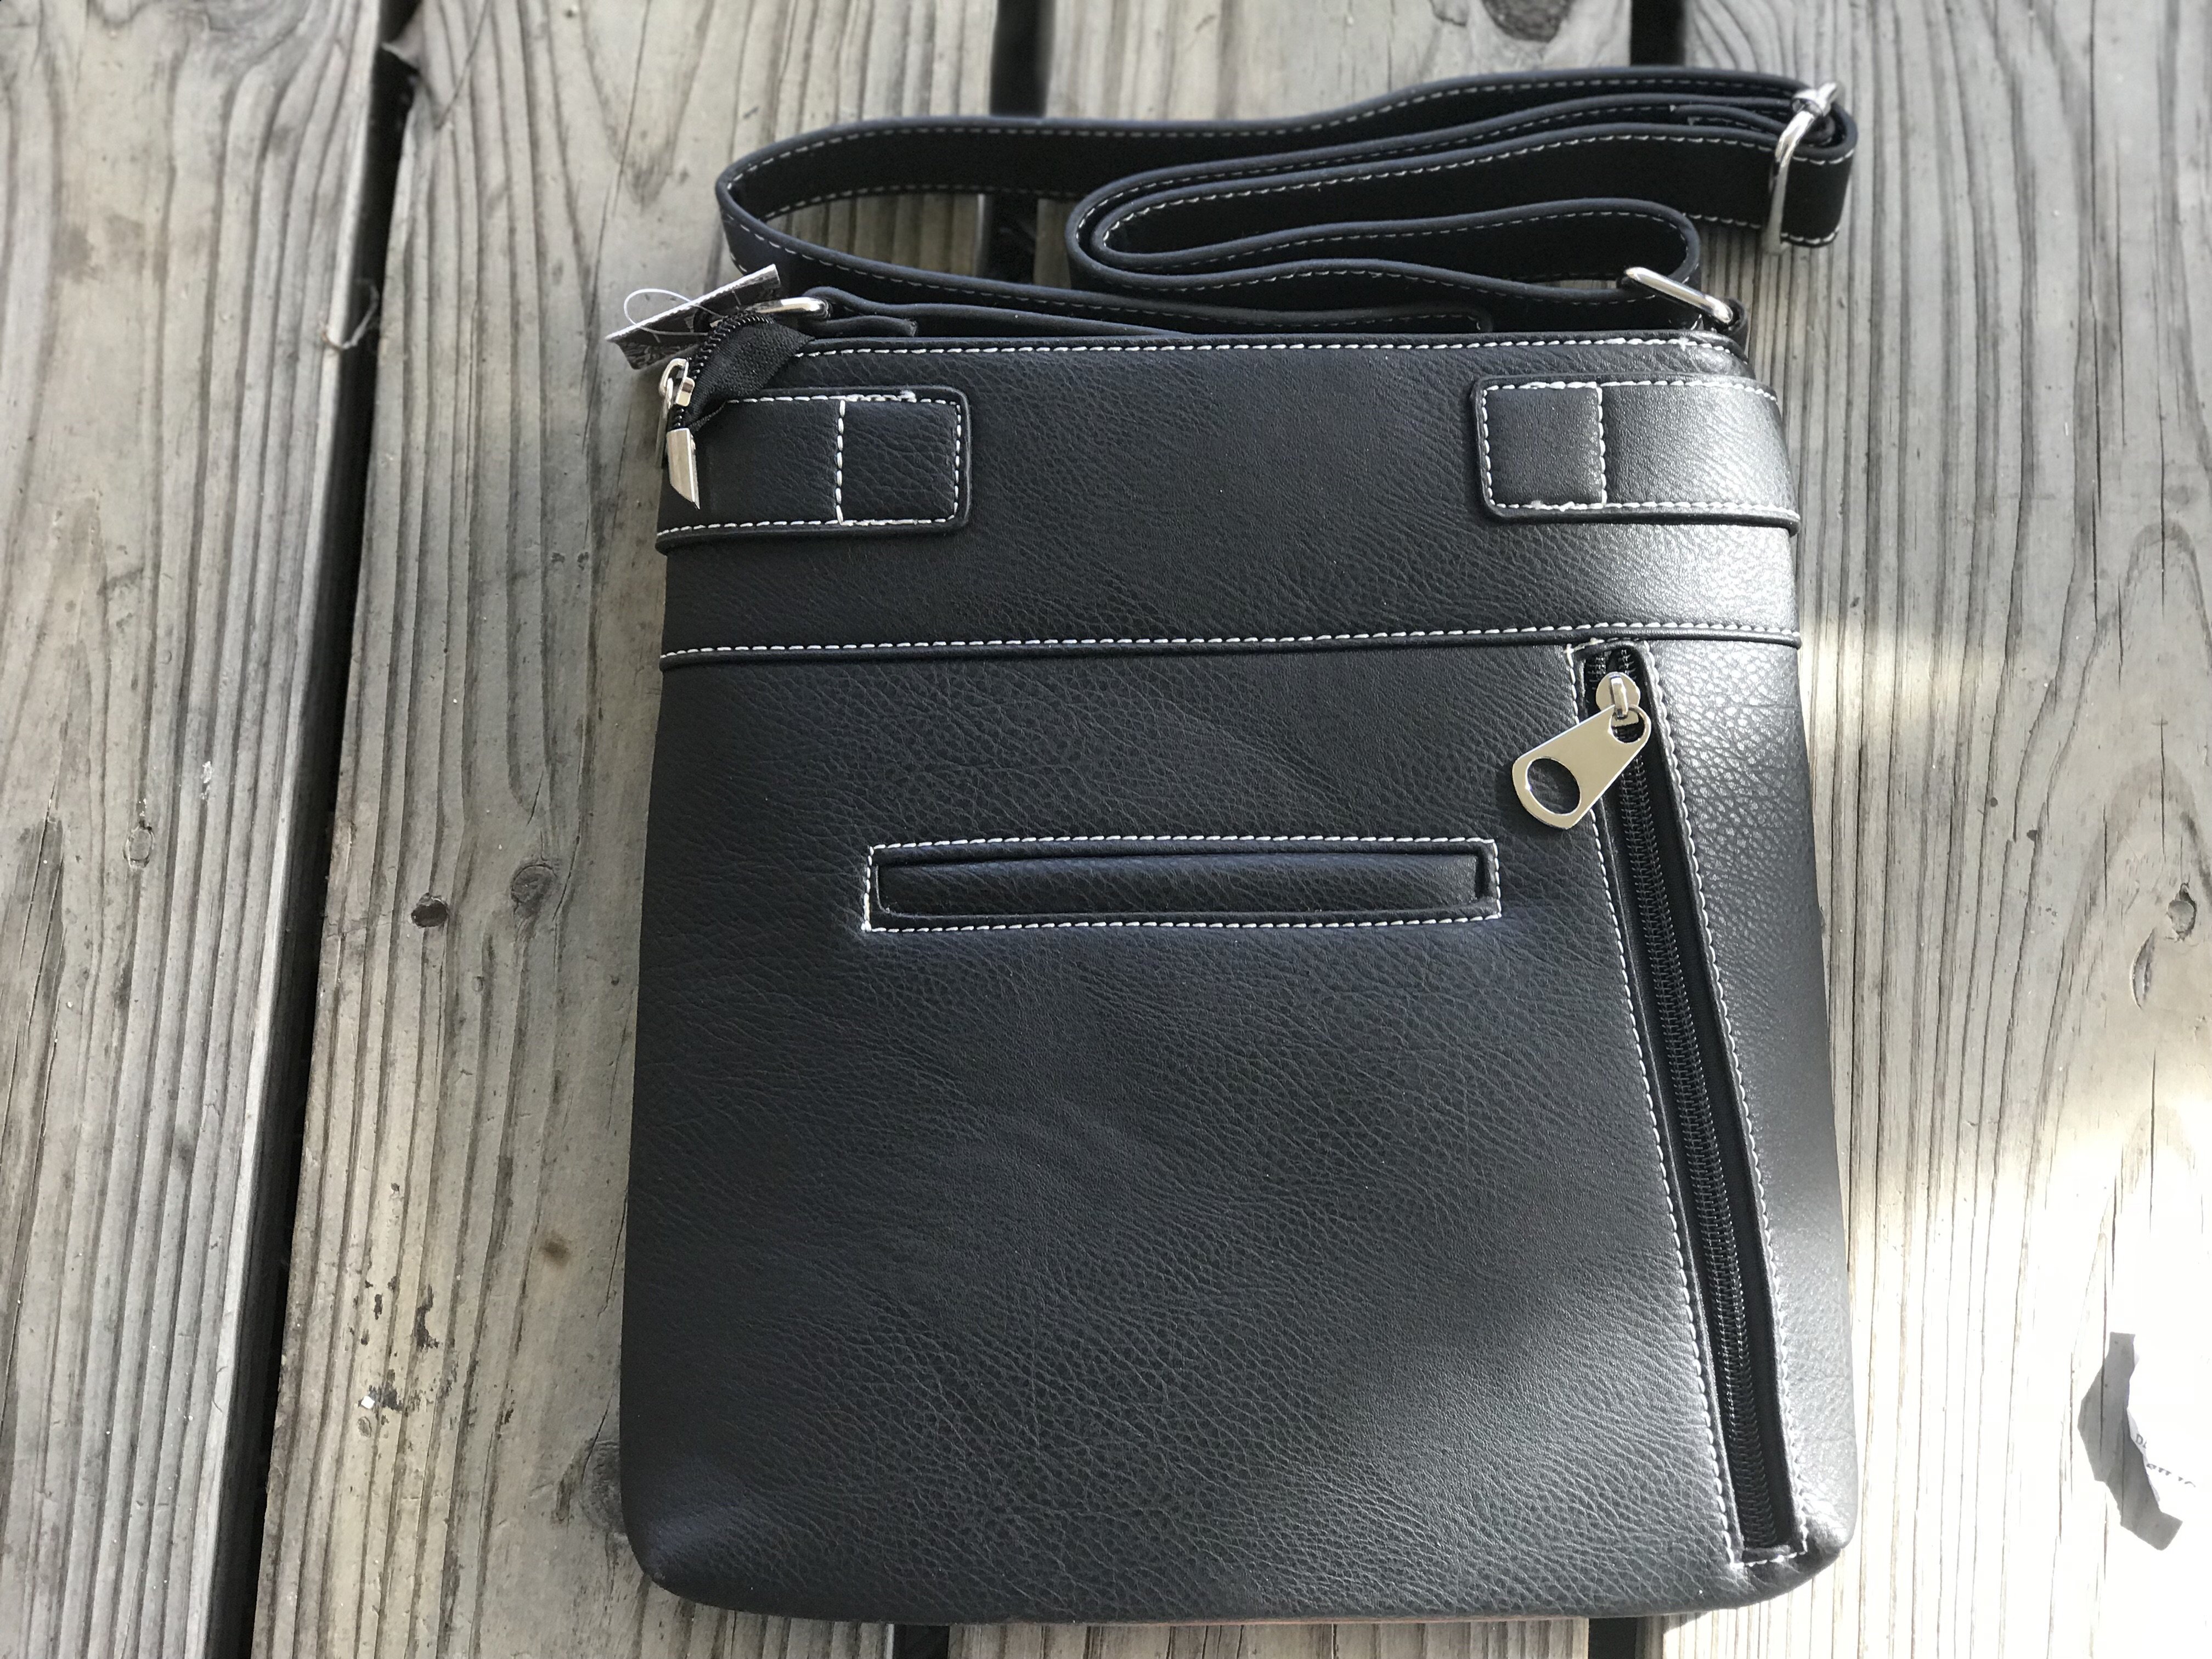 Vintage Crossbody Conceal Carry Messenger Bag